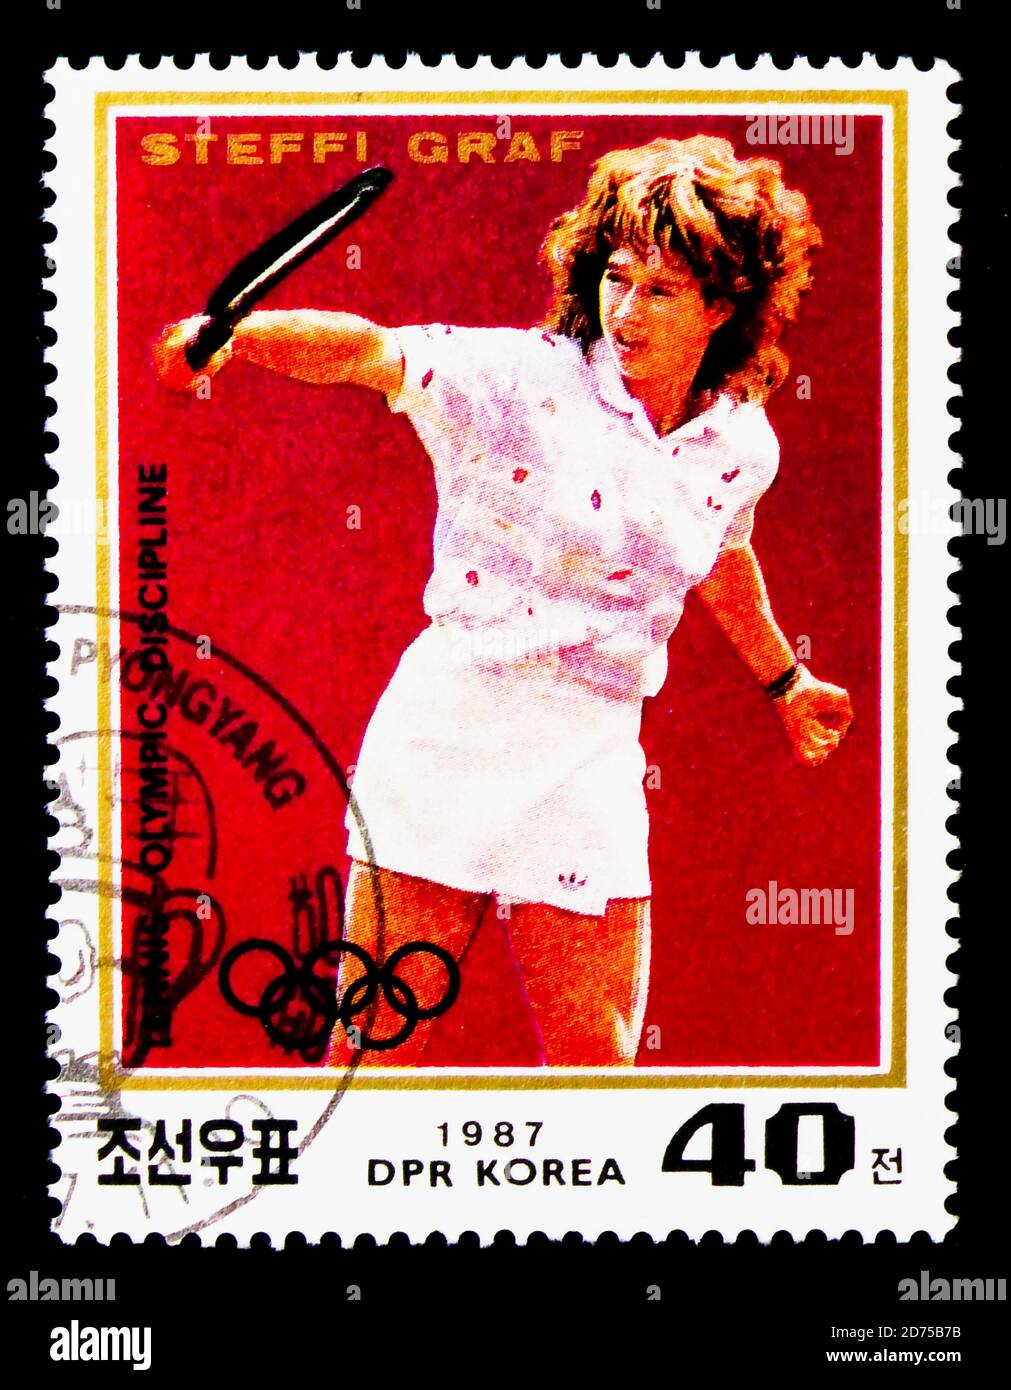 MOSCOU, RUSSIE - 25 NOVEMBRE 2017 : un timbre imprimé en république populaire démocratique de Corée montre Portrait de Steffi Graf, série, vers 1987 Banque D'Images